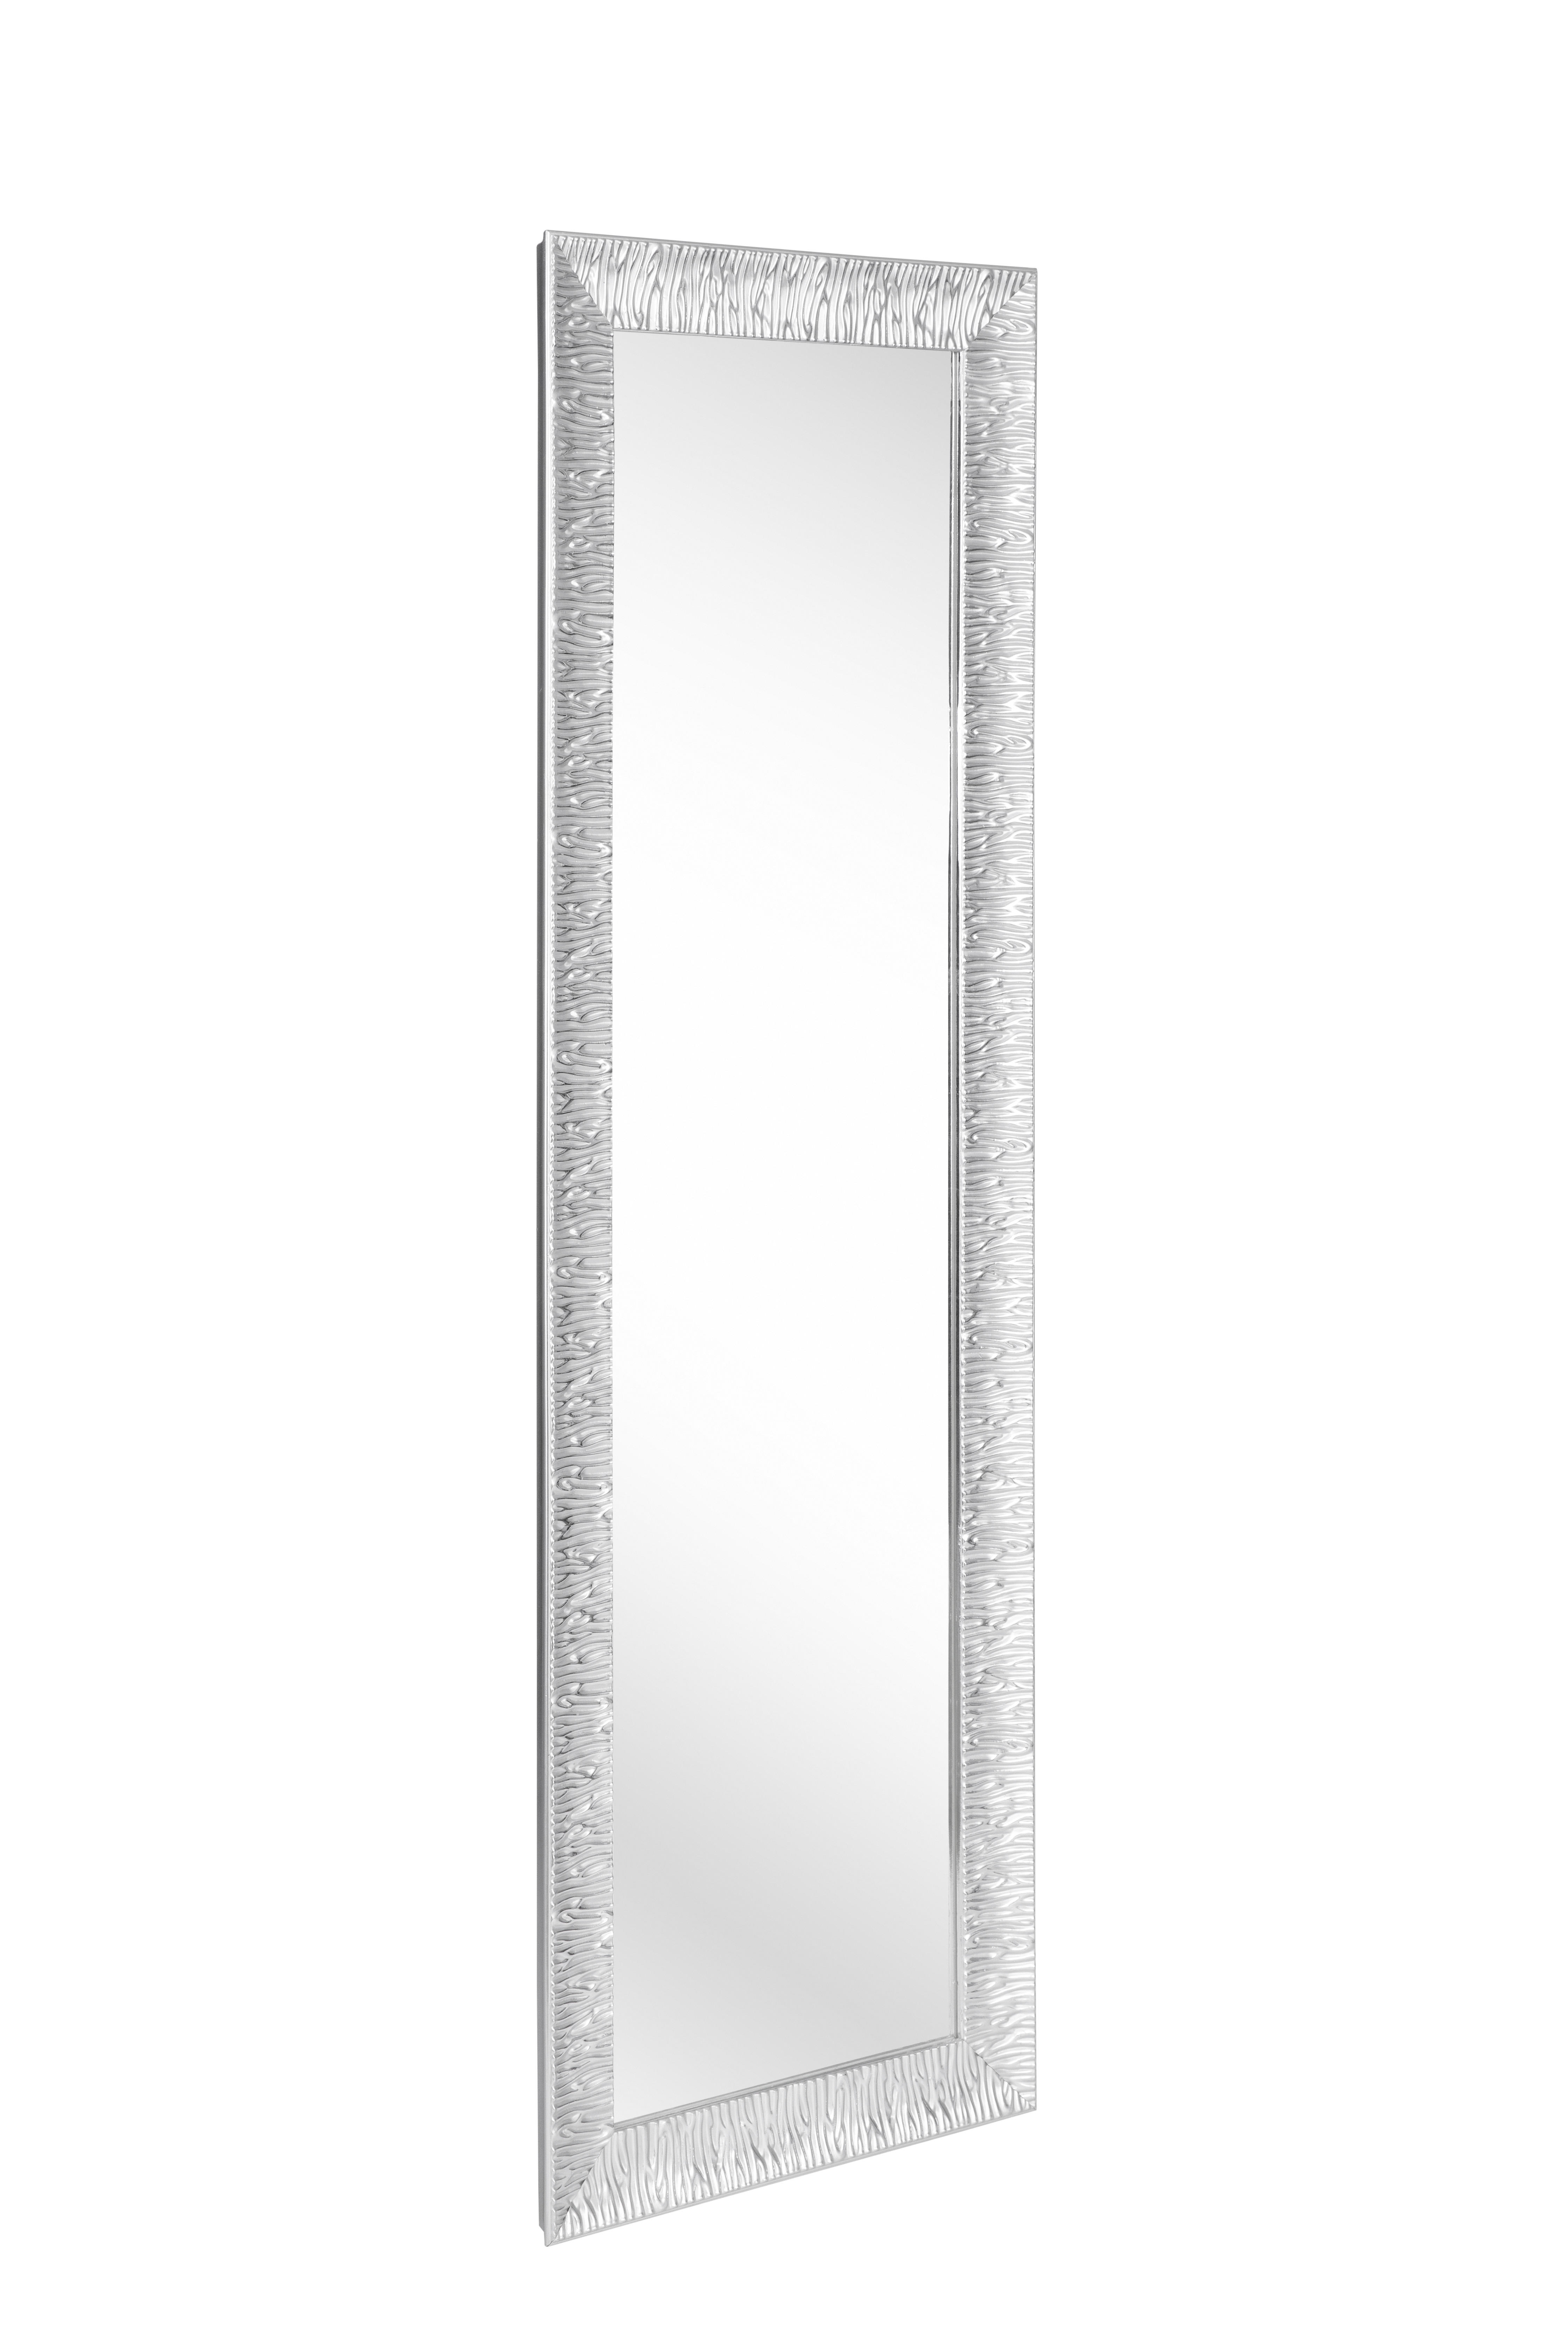 WANDSPIEGEL Silberfarben  - Silberfarben, LIFESTYLE, Glas/Holz (47/147/3cm) - Xora